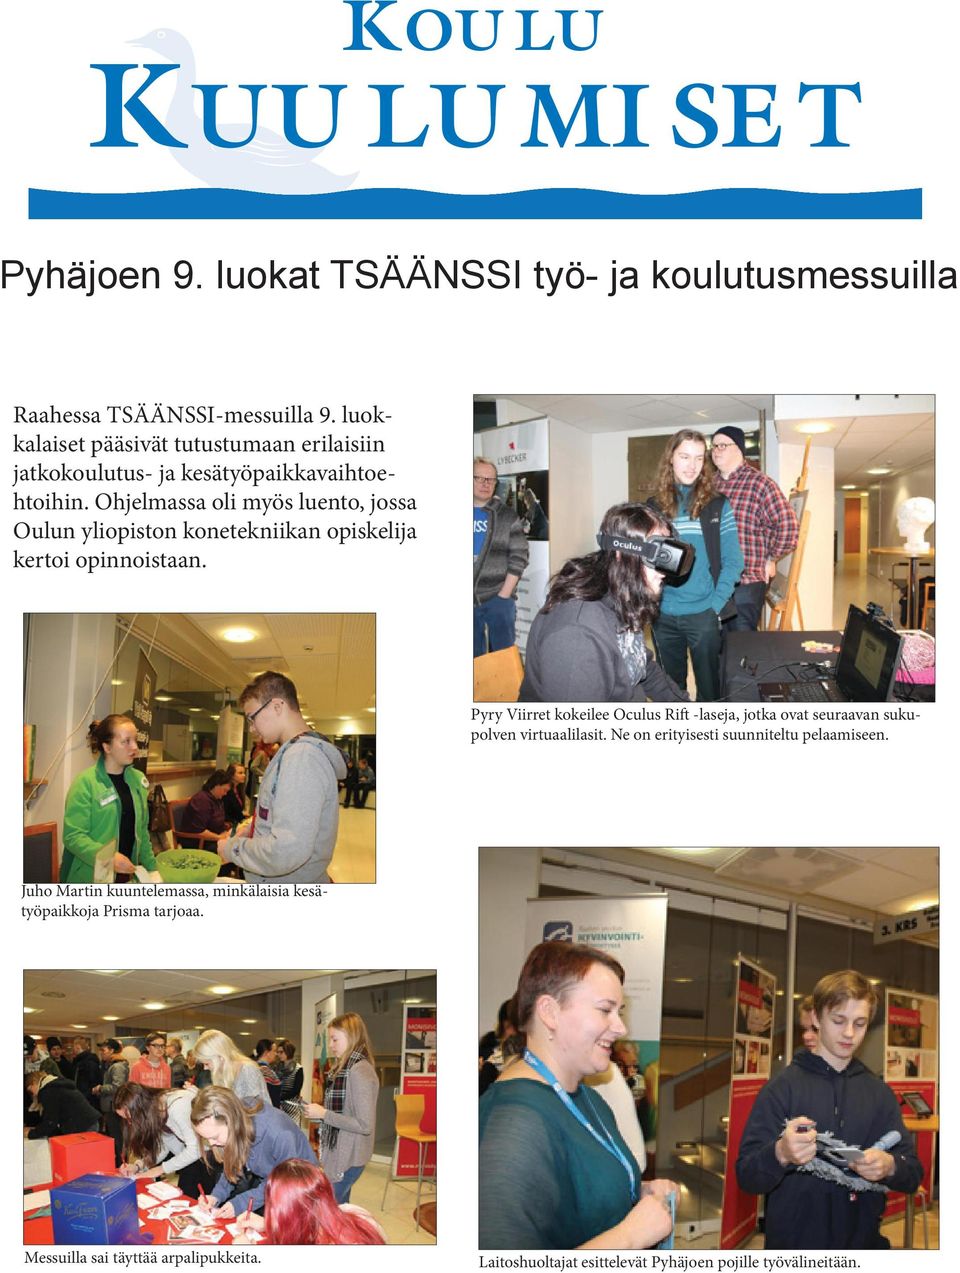 Ohjelmassa oli myös luento, jossa Oulun yliopiston konetekniikan opiskelija kertoi opinnoistaan.